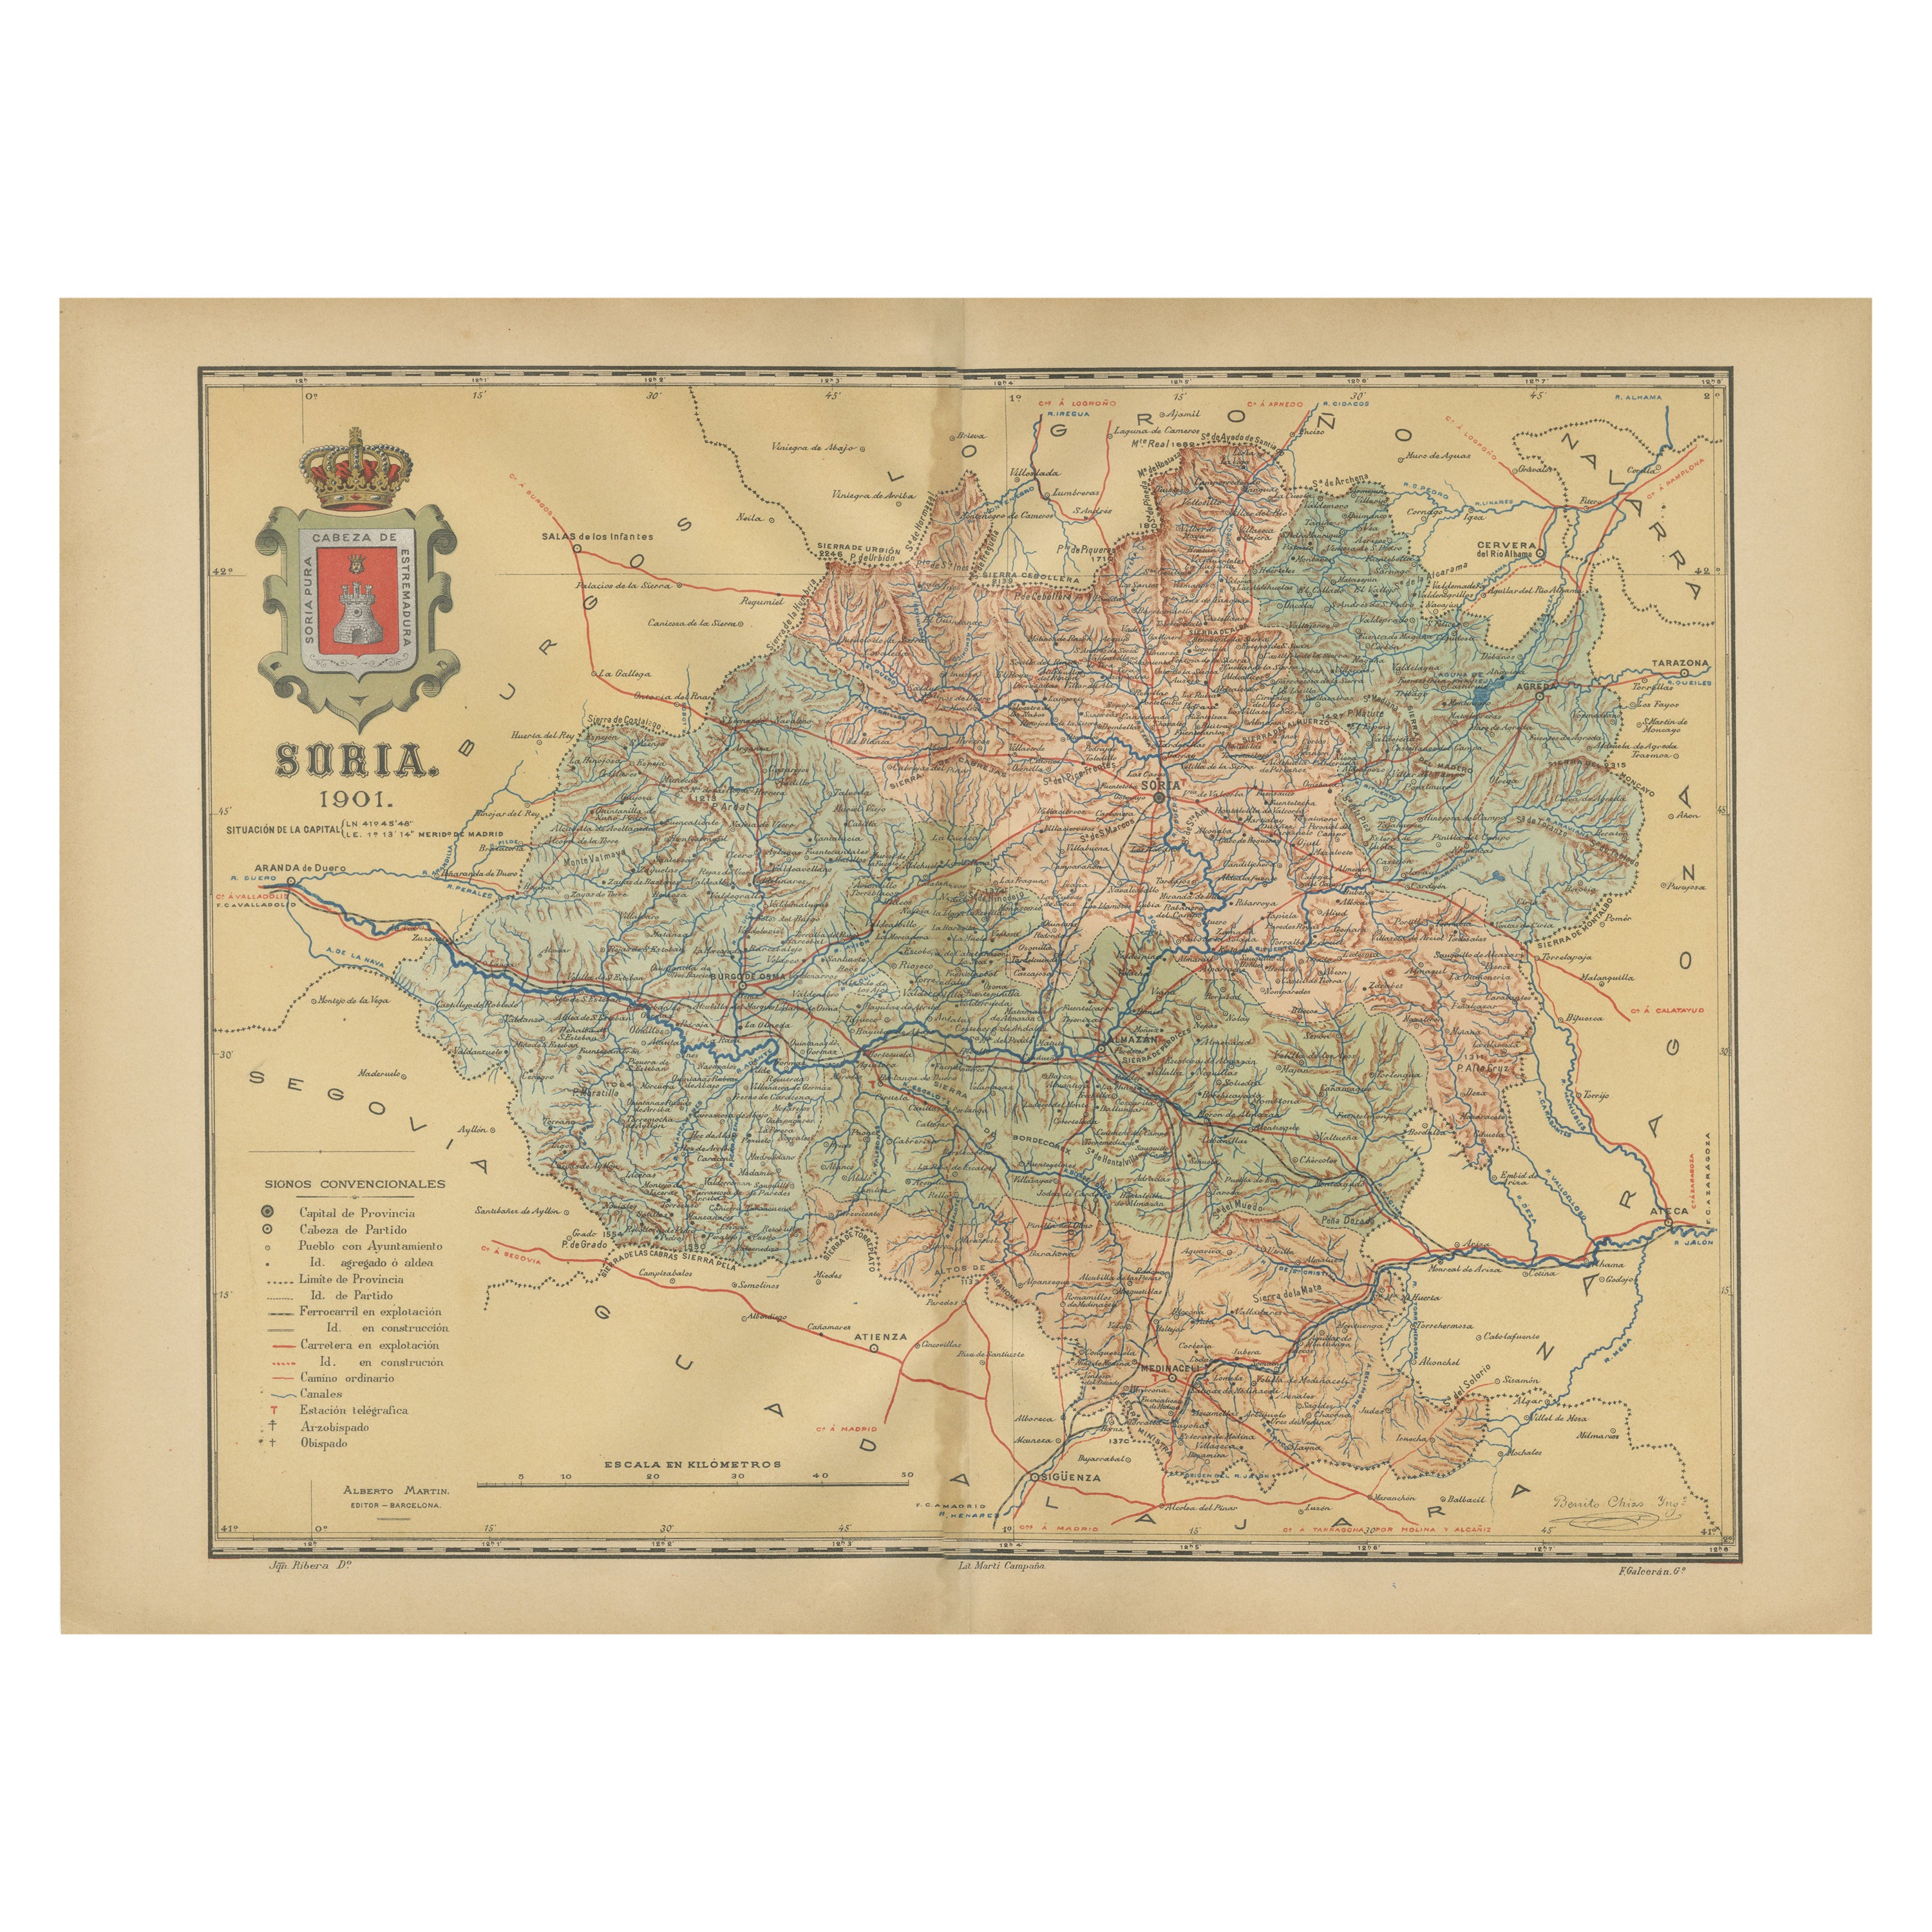 Map of Soria Province, 1901: Detaillierte Kartografie des Nordosten Spaniens